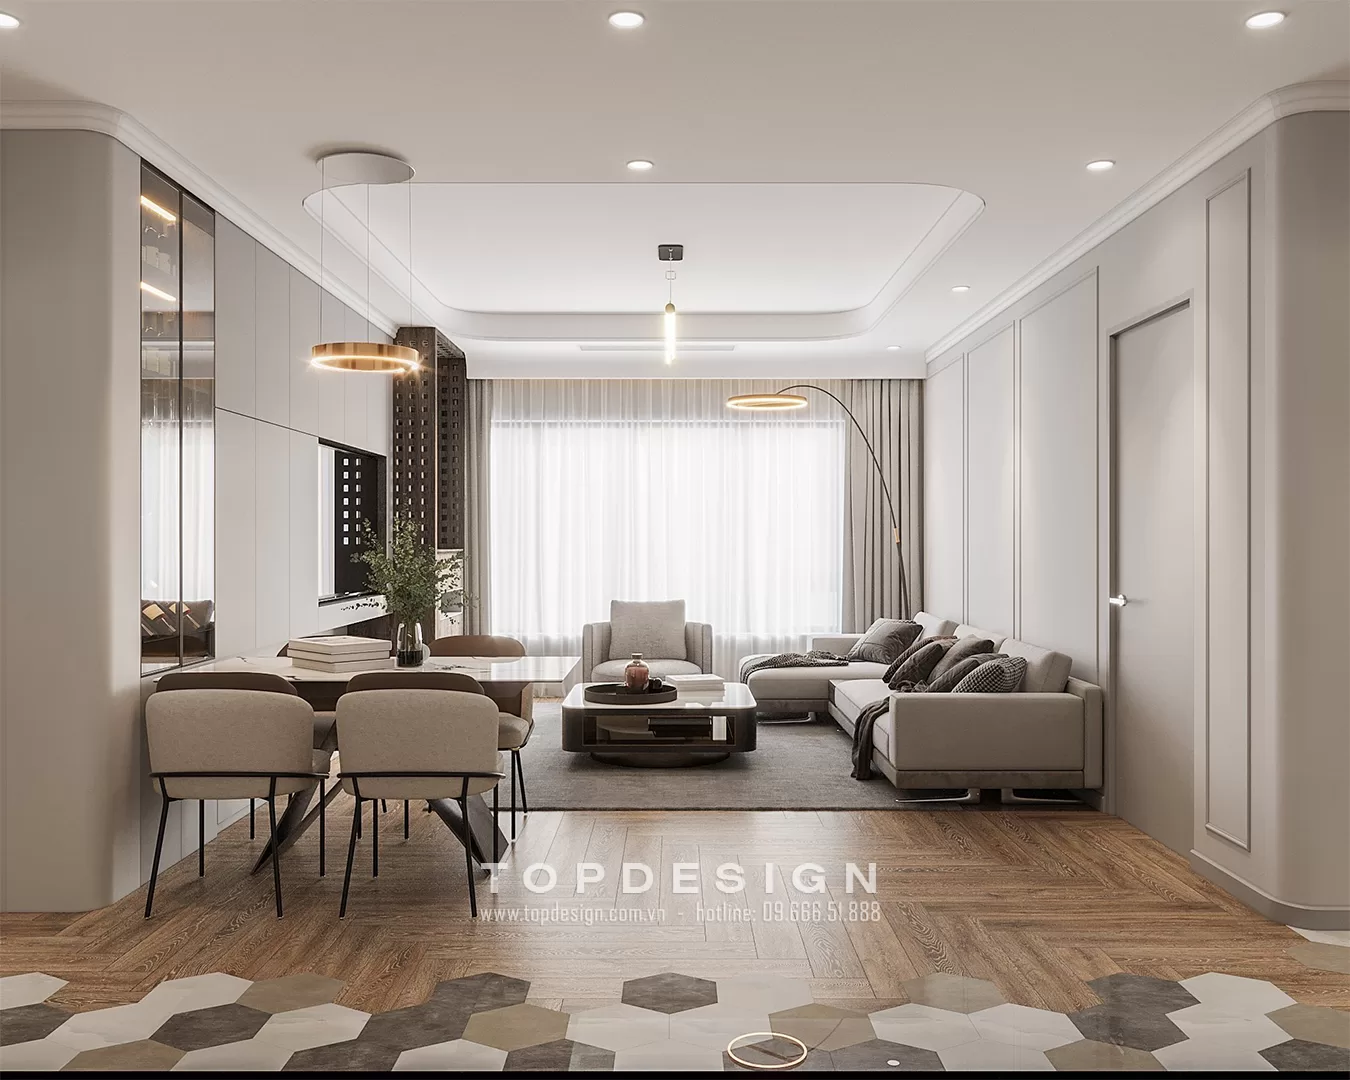 Thiết kế nội thất nhà phố đương đại - TOPDESIGN - 5